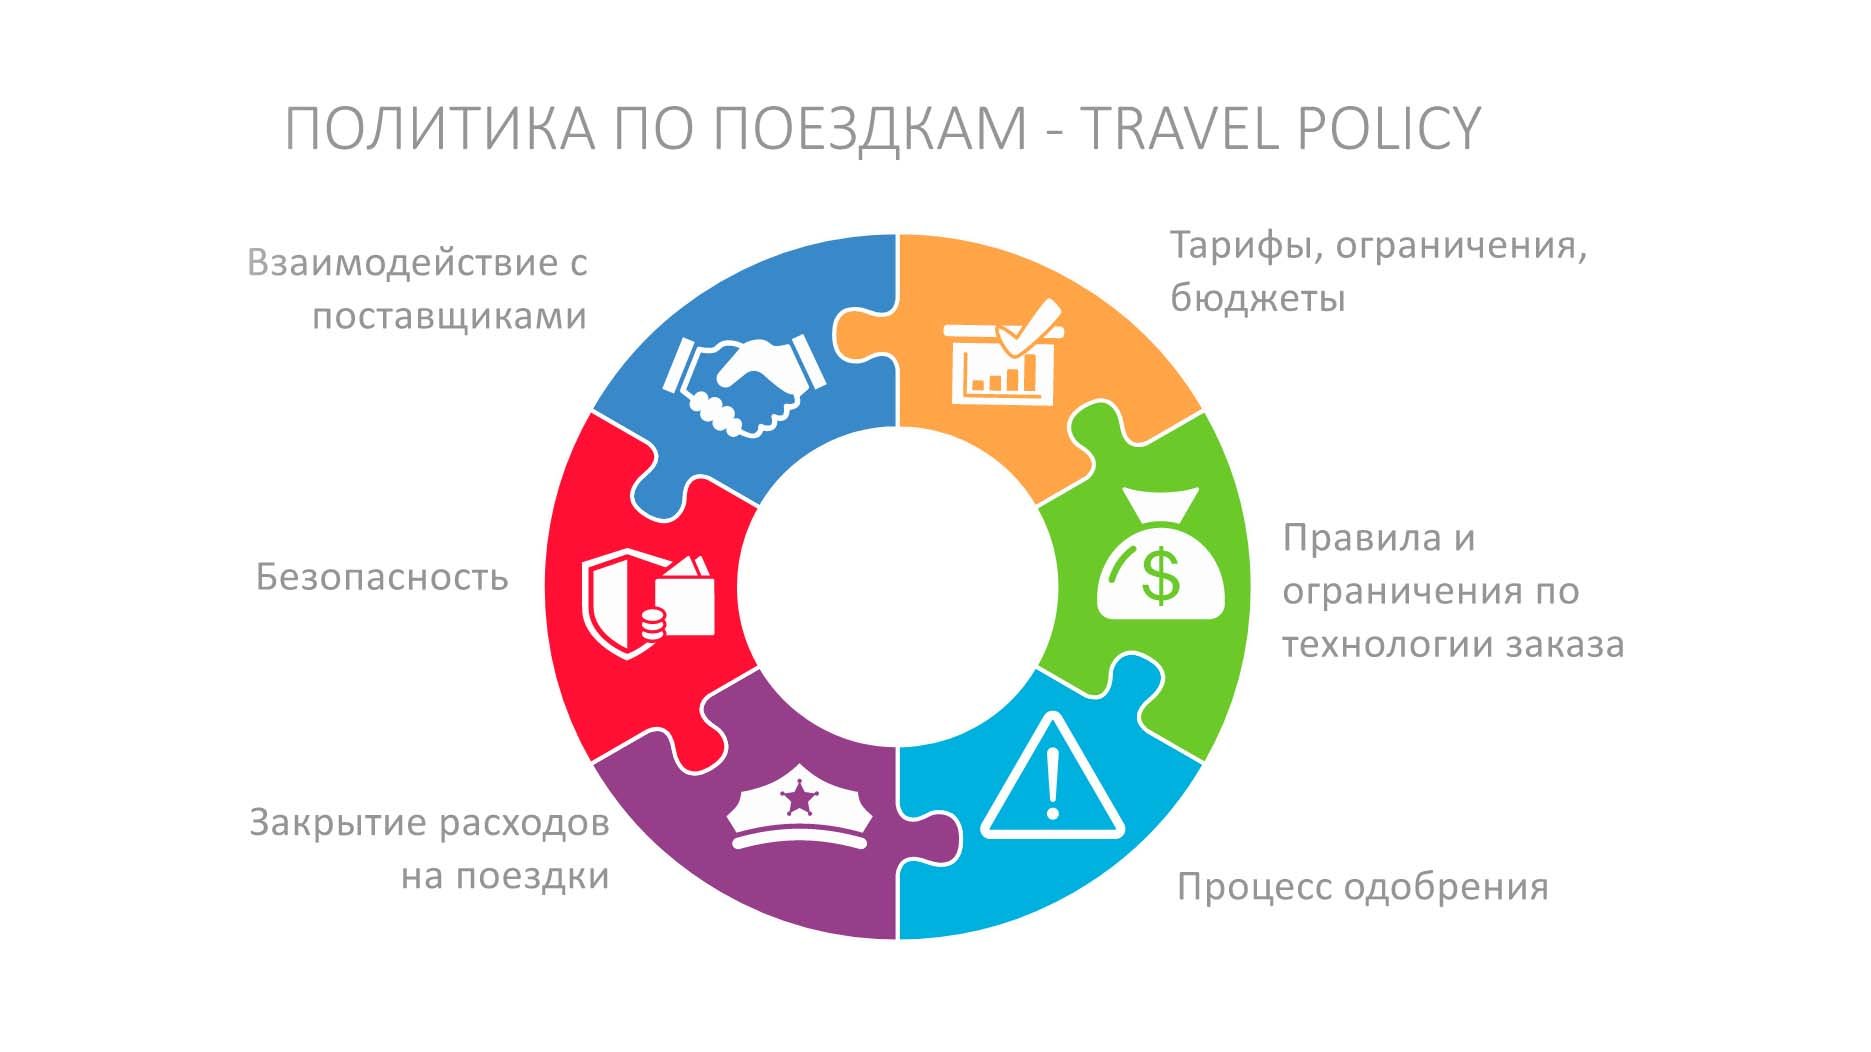 Travel politika